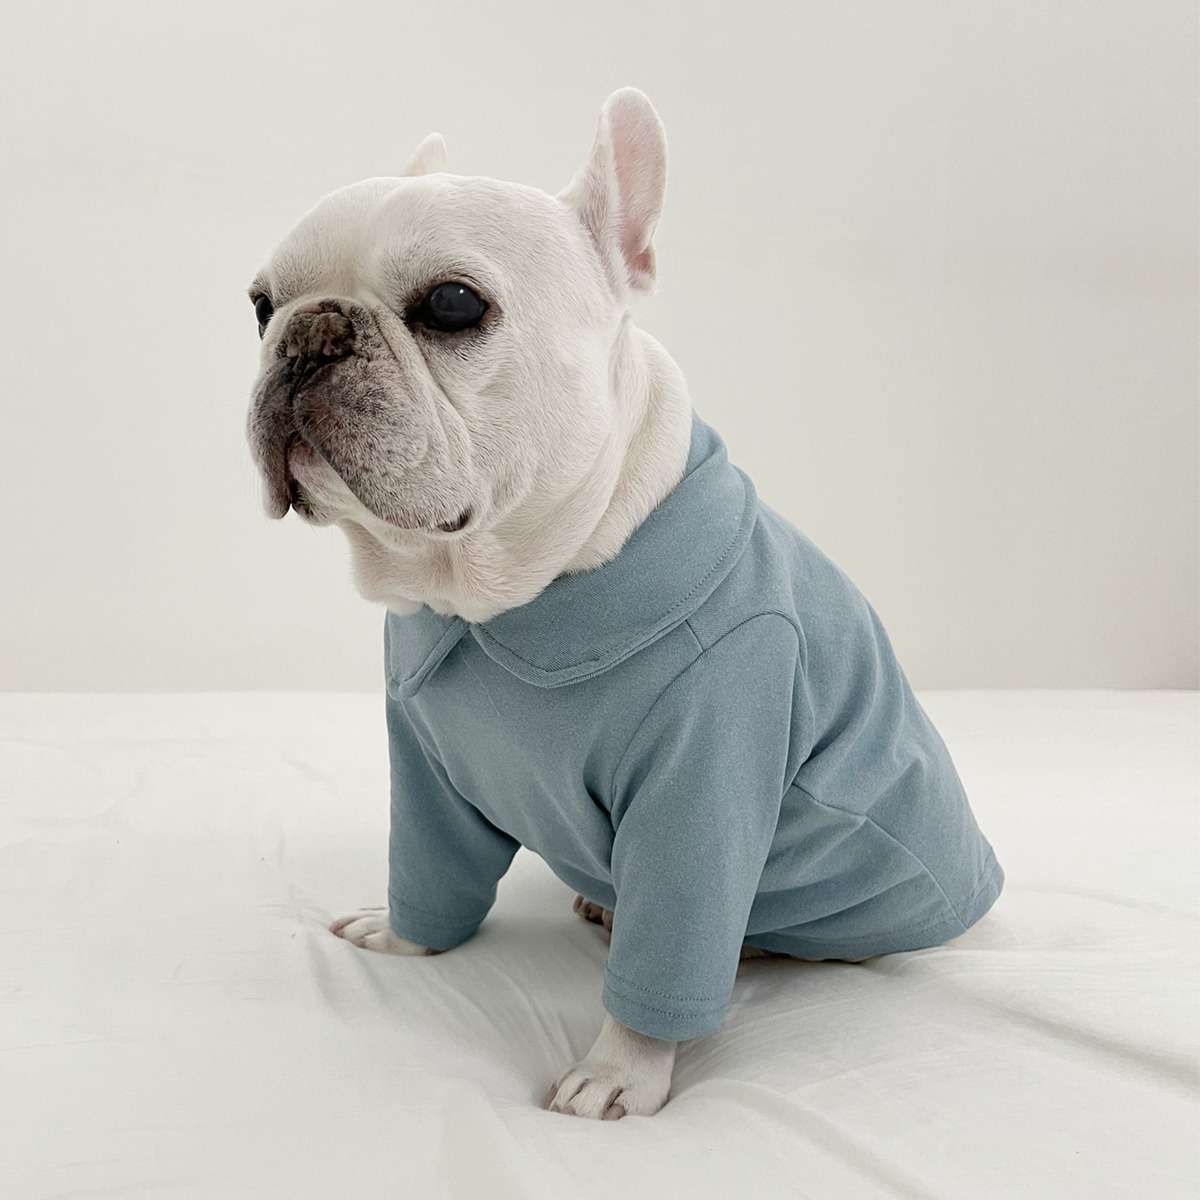 ロンパースをはじめとした人気アイテムを取り扱う犬服の通販